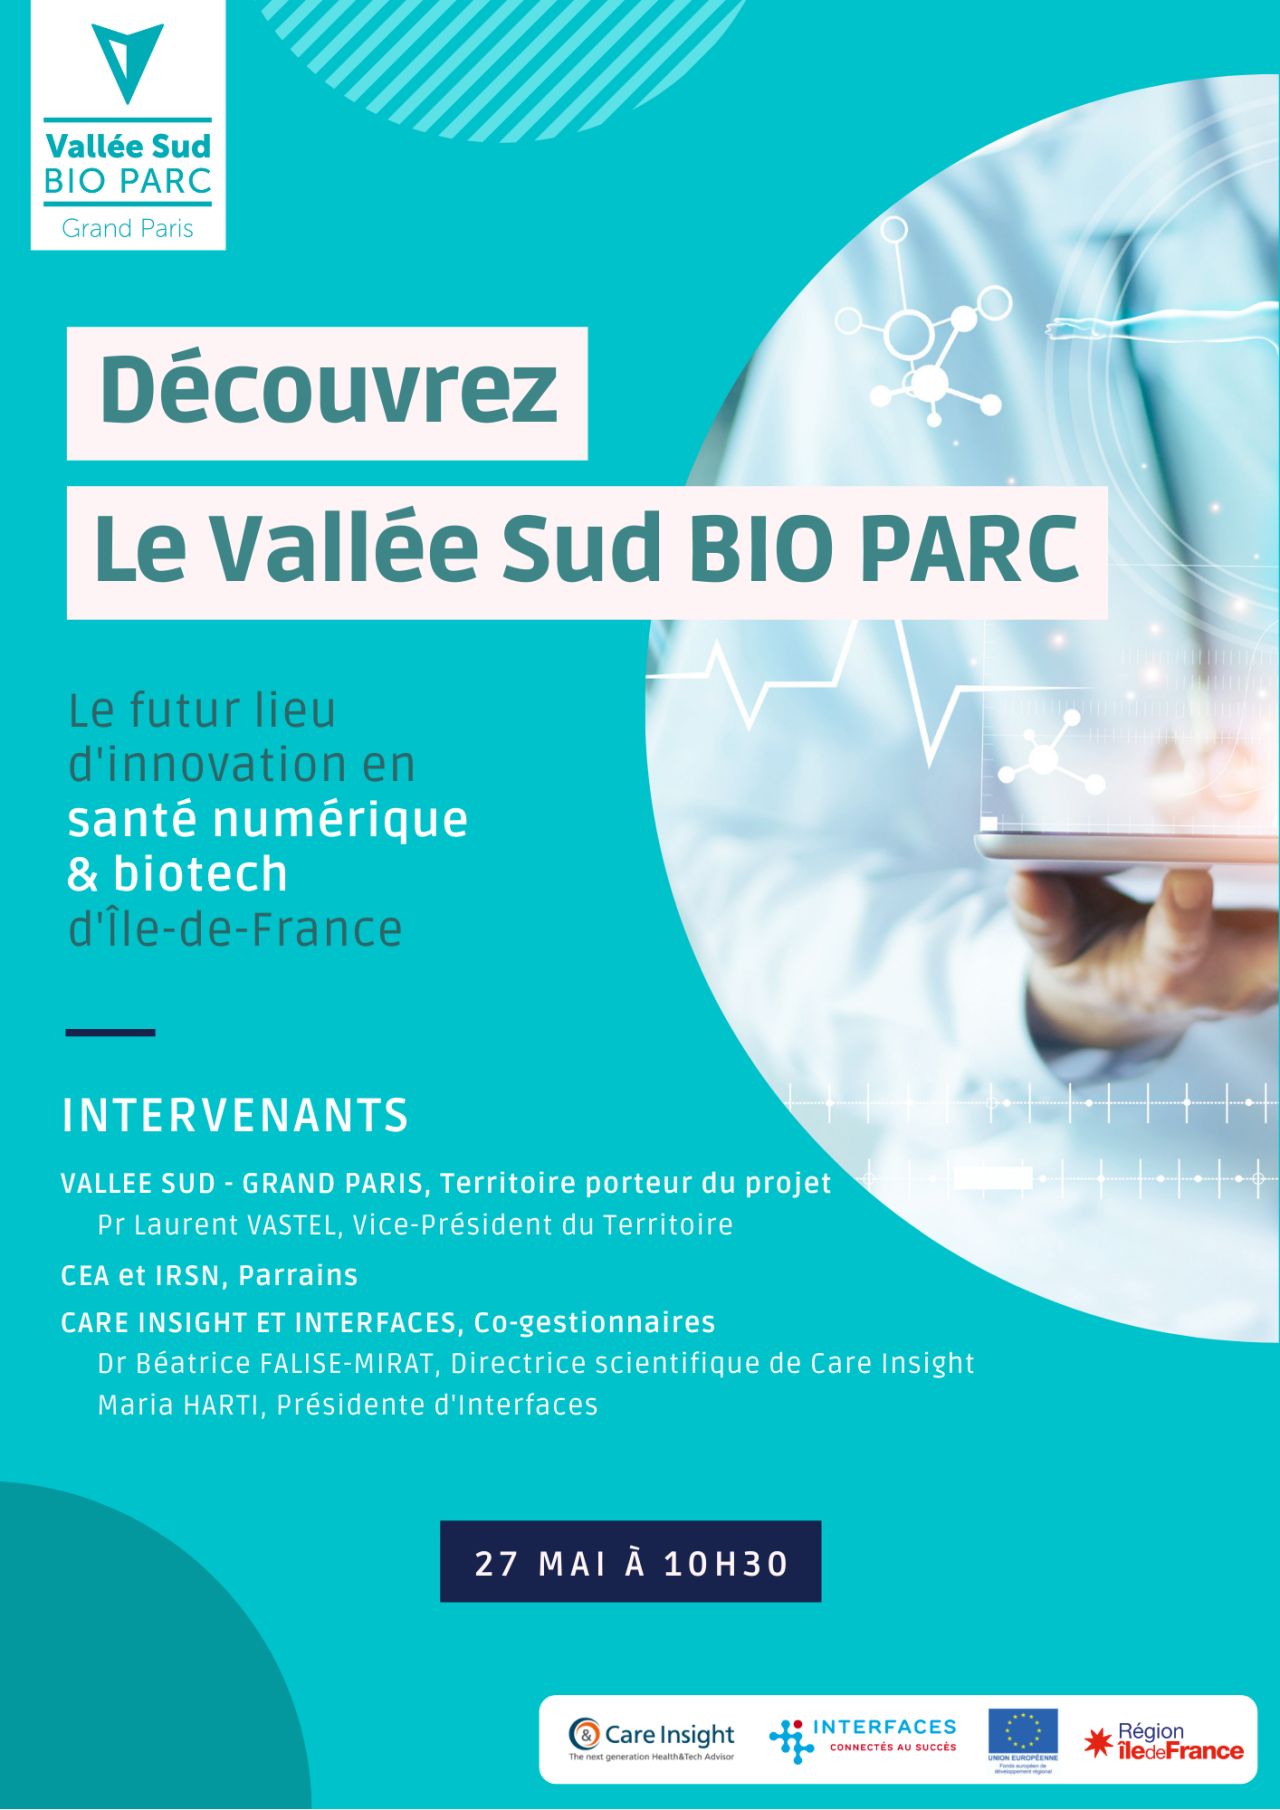 VIDÉO | Vallée Sud BIO PARC : le futur lieu d’innovation en santé en Île-de-France